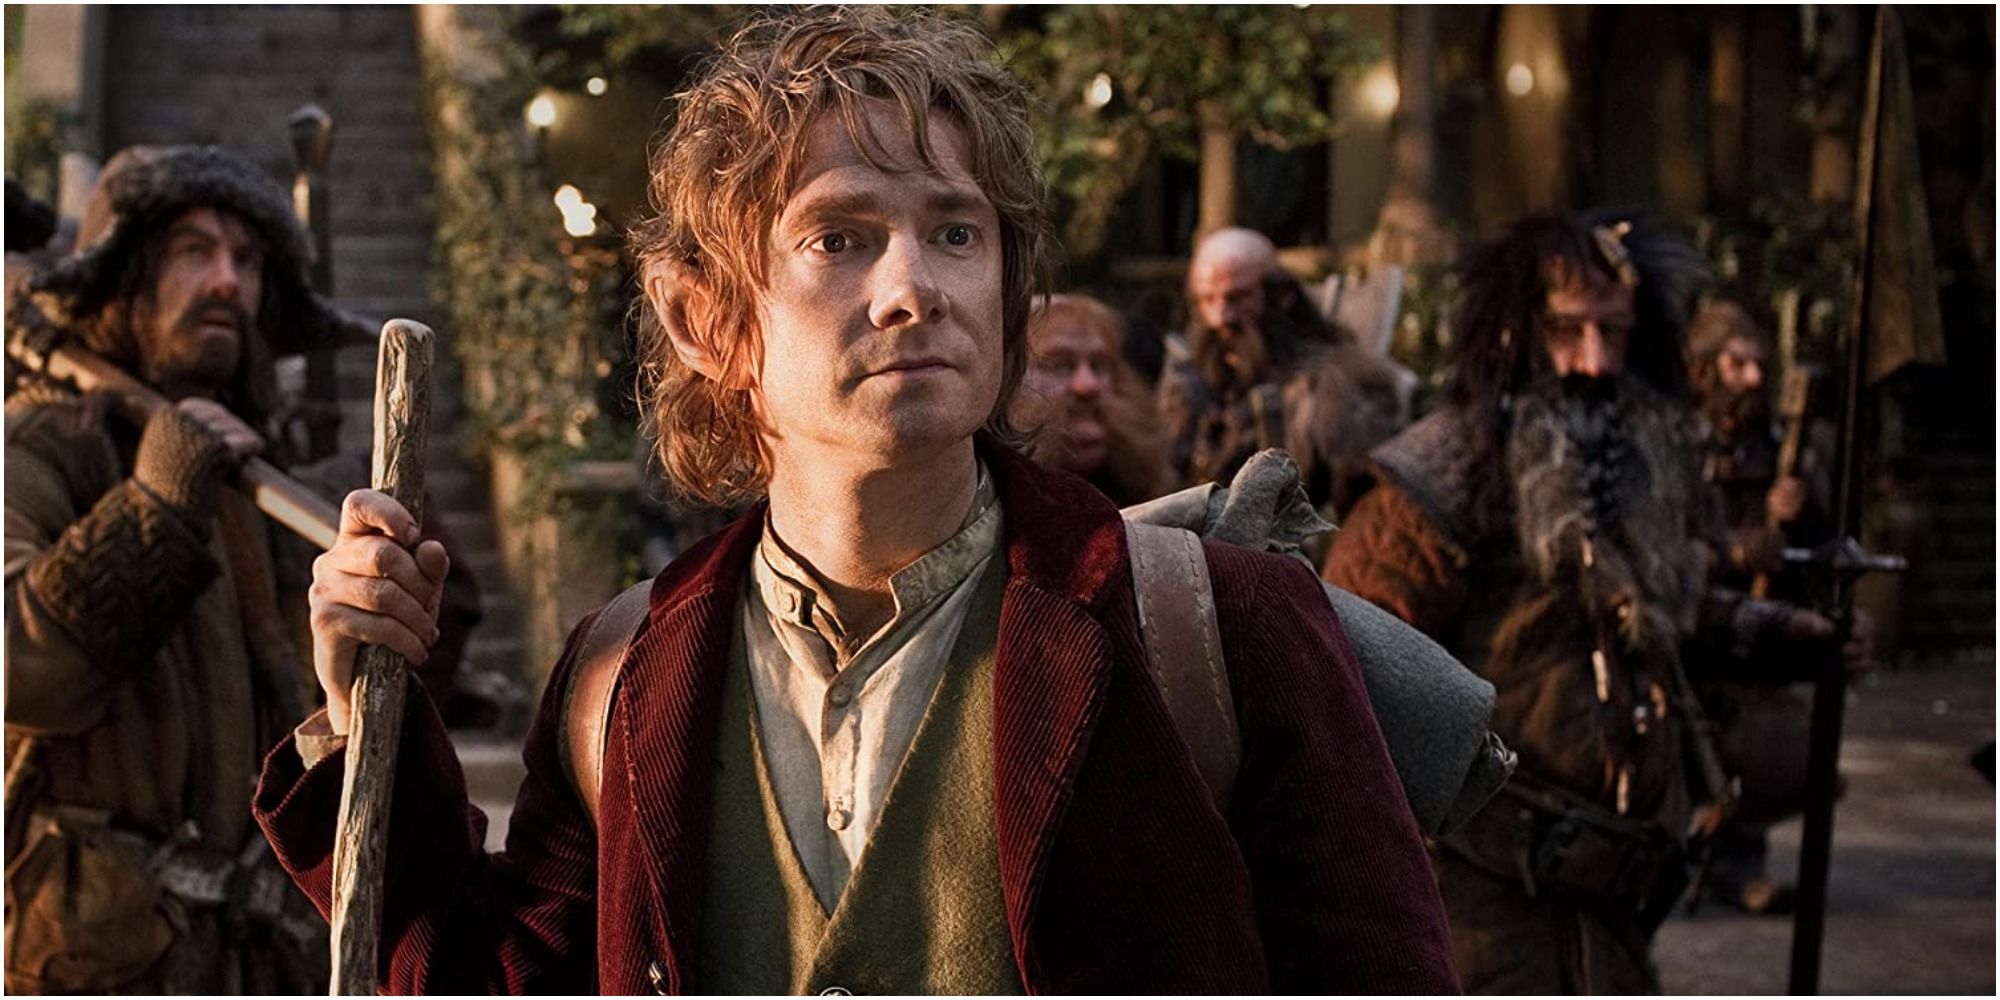 Bilbo Baggins in The Hobbit: An Unexpected Journey